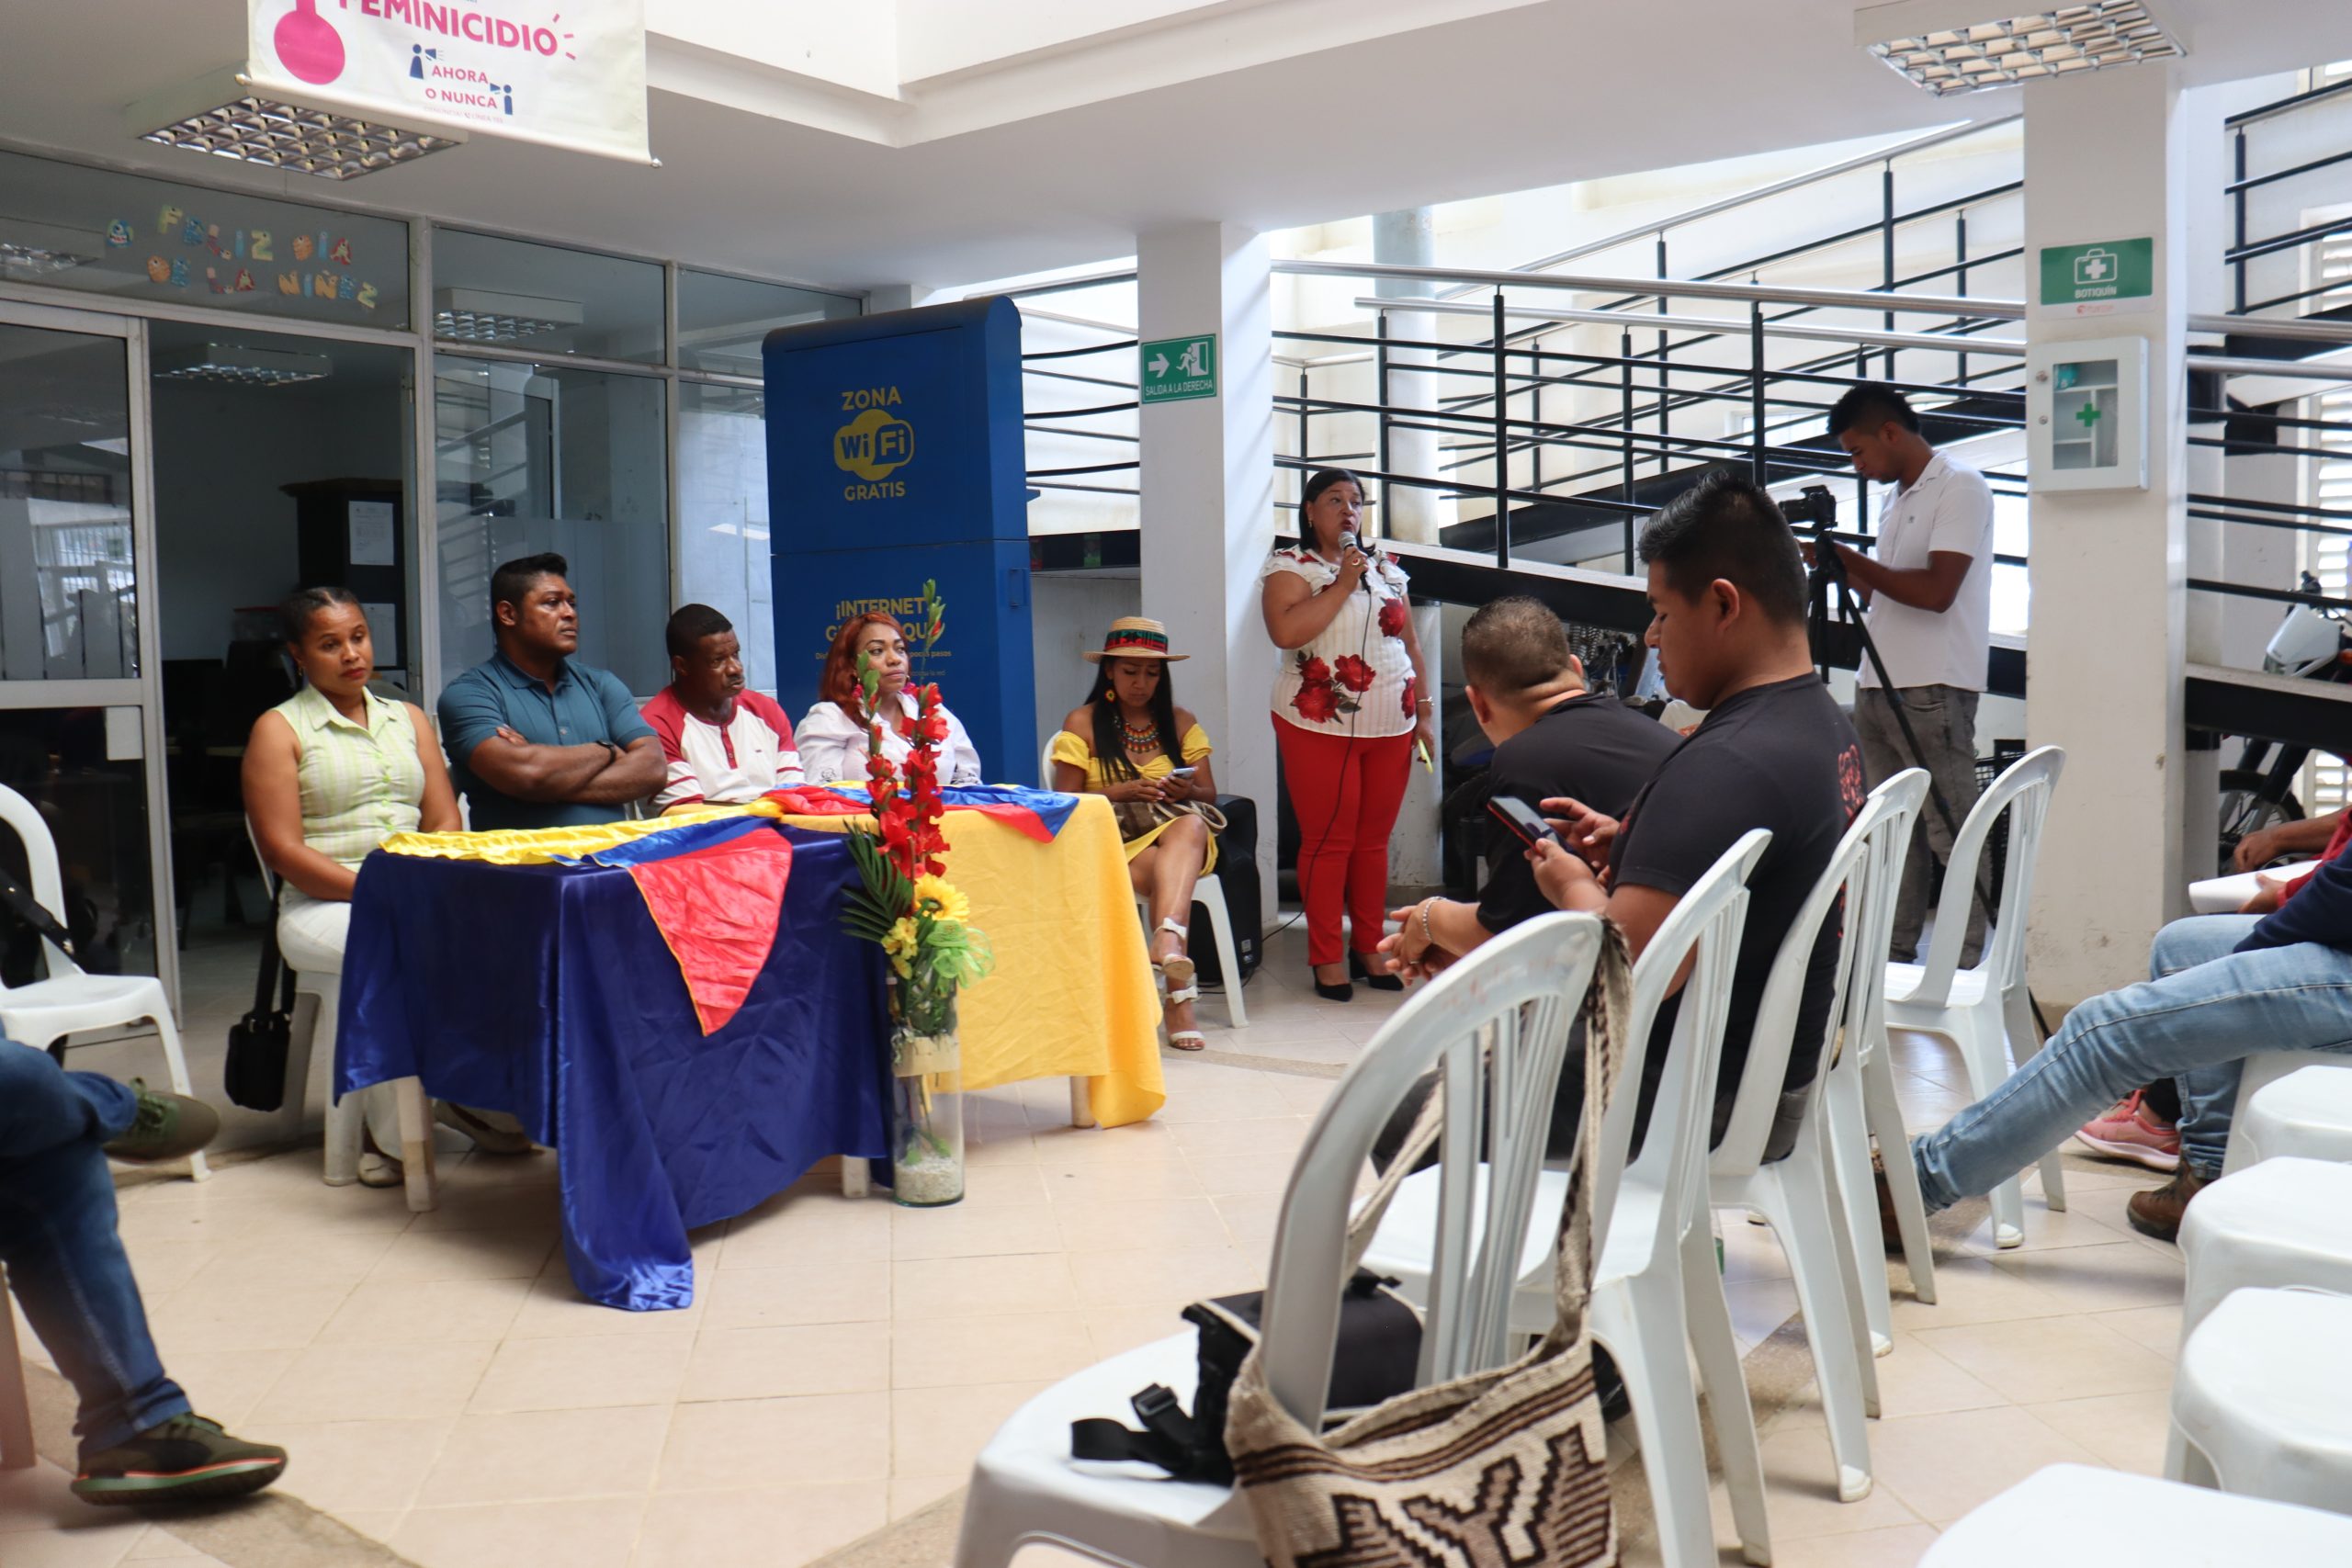 Mujer hablando por micrófono frente a participantes de Municipio de Suáre